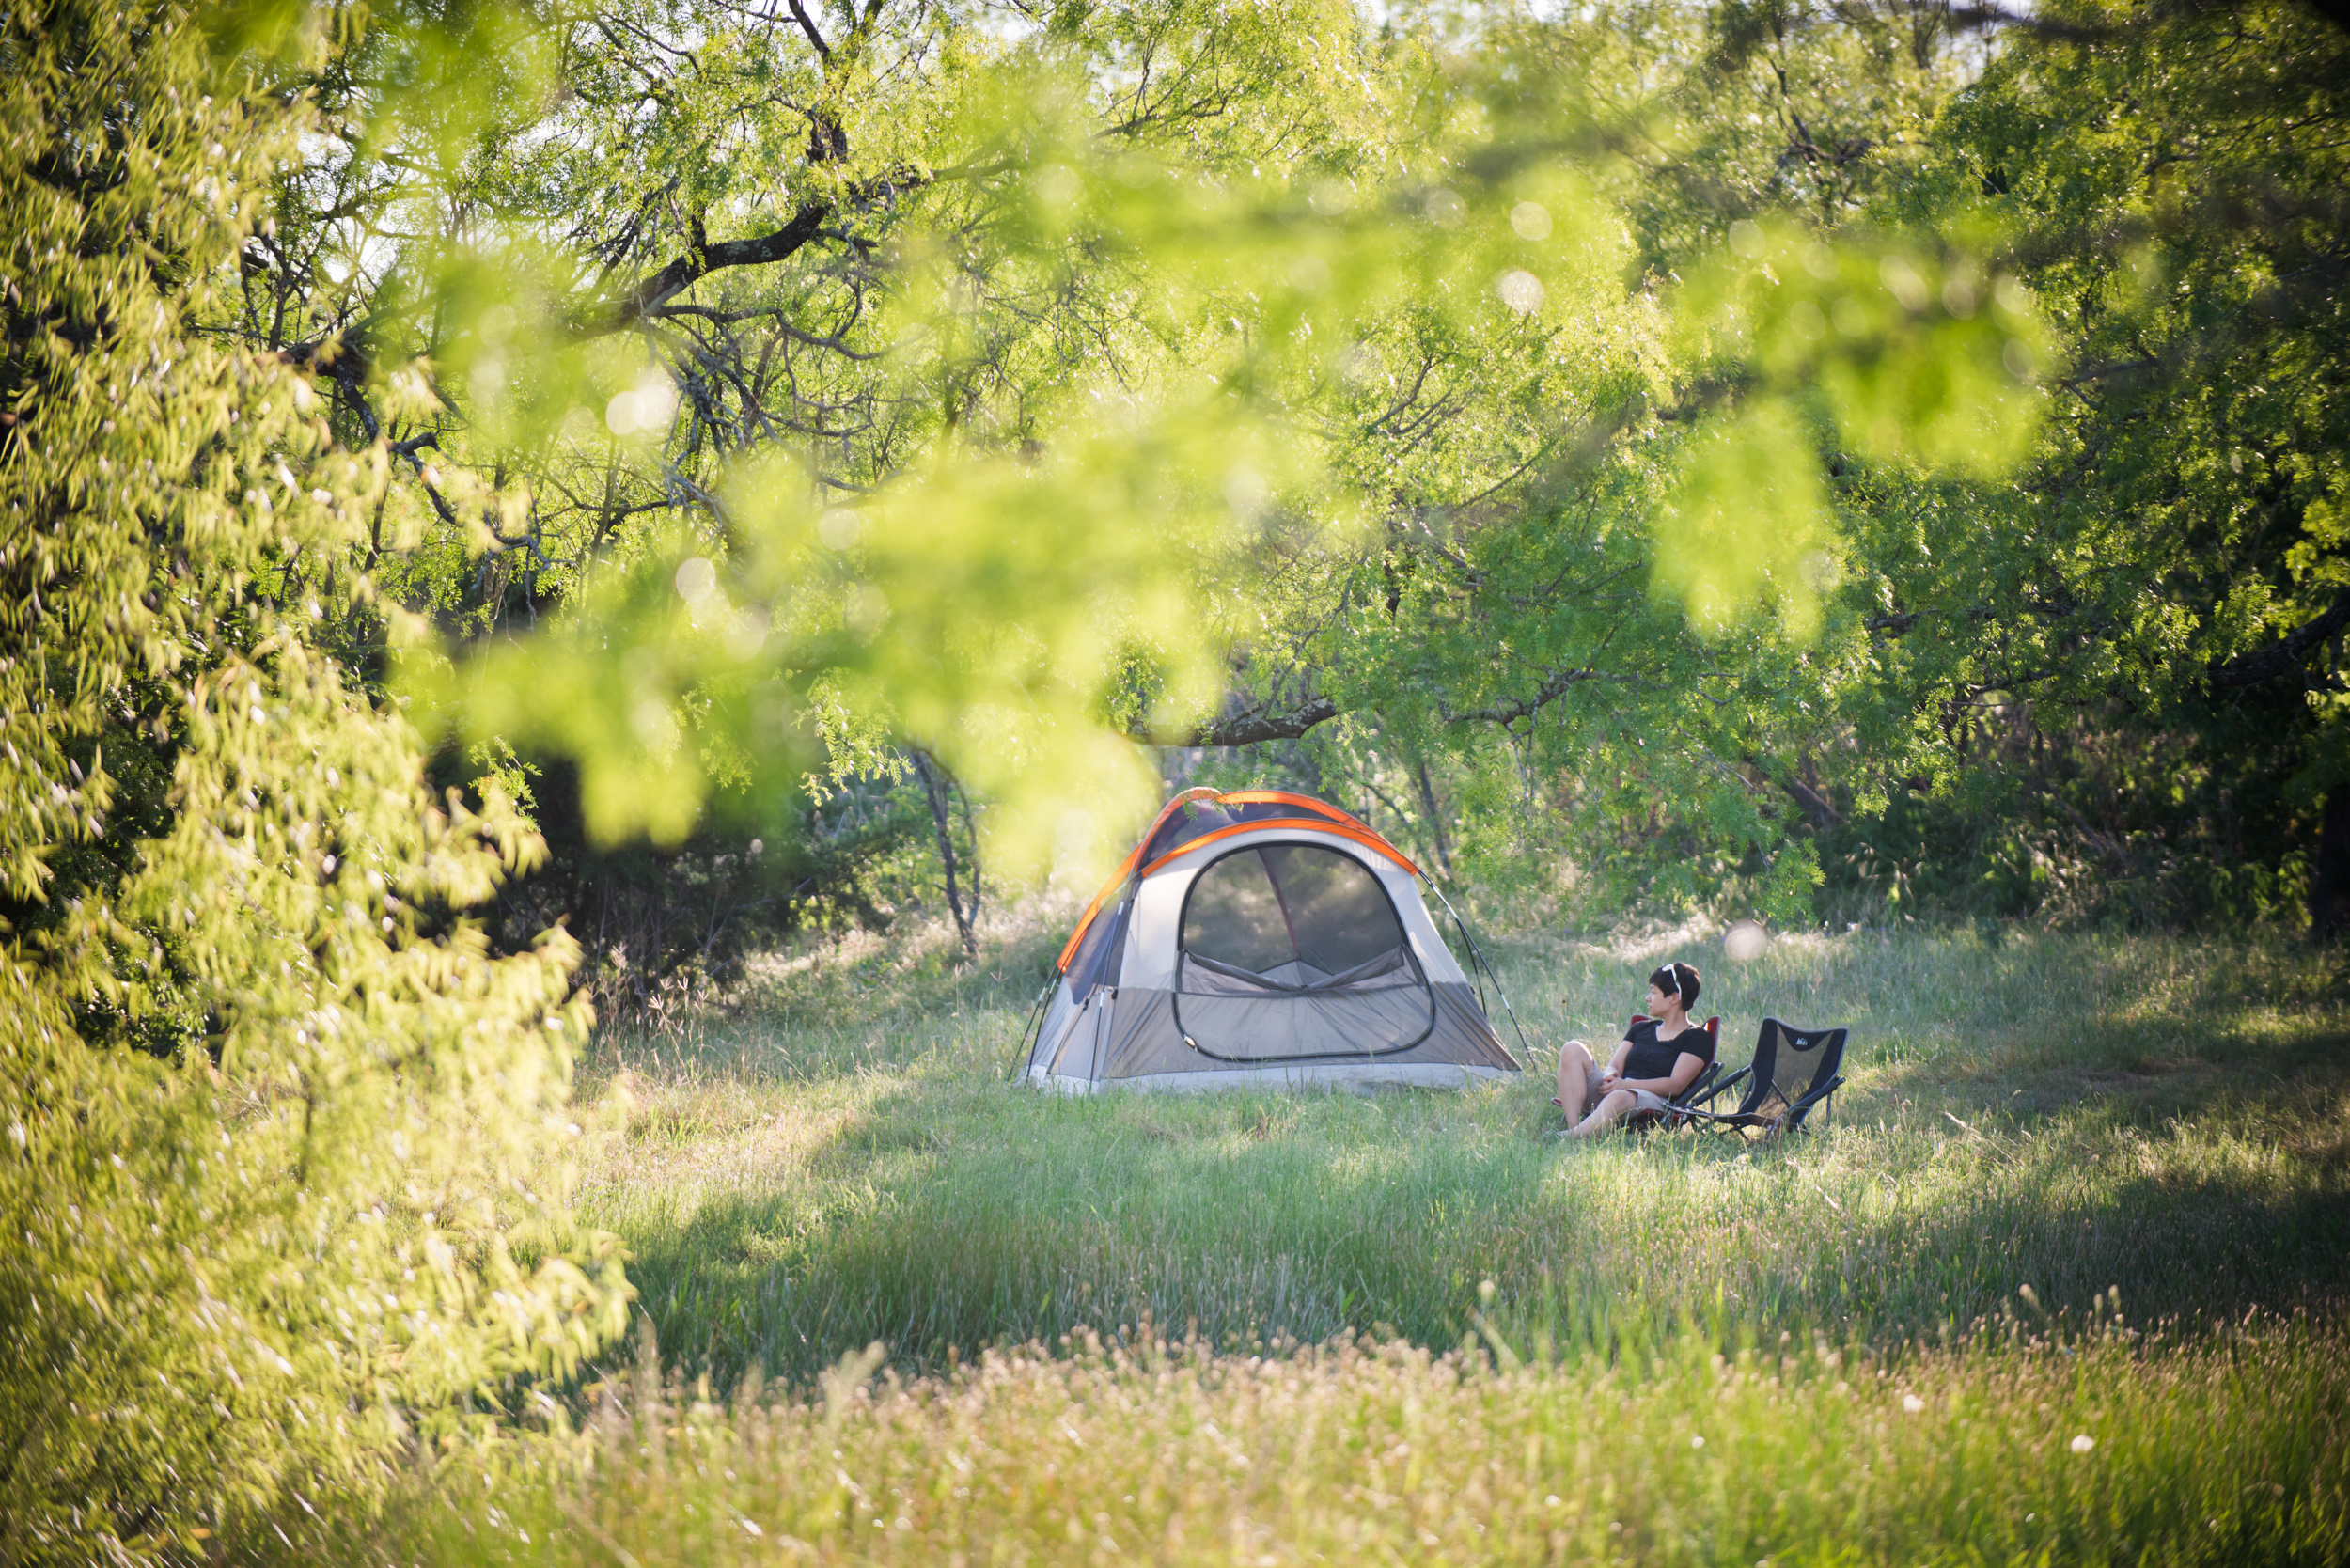 a Hipcamp rengeteg olcsó kemping és RV lehetőséget kínál Texasban, amelyek gyakorlatilag ingyenesek